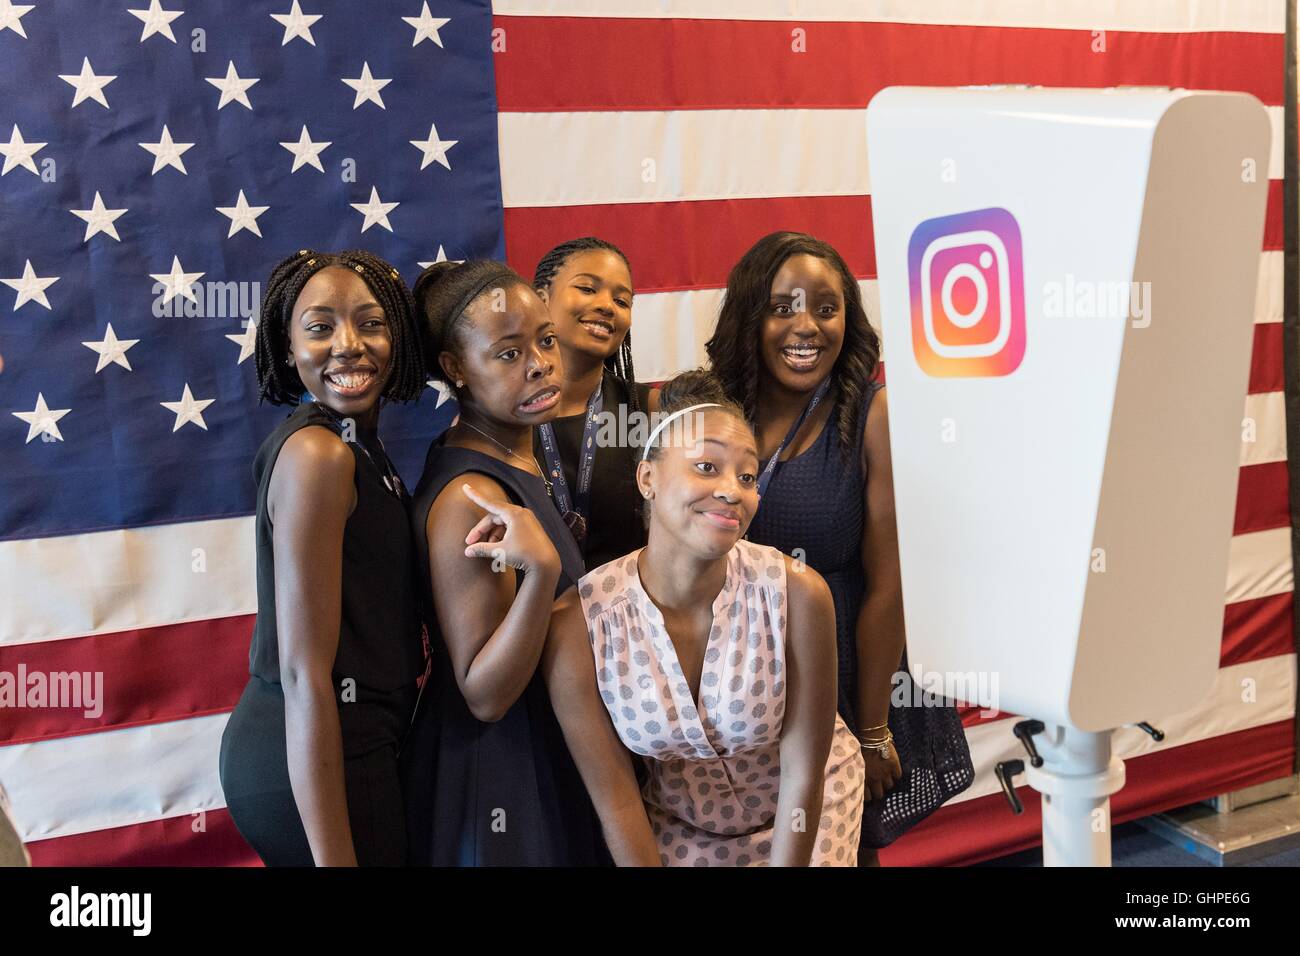 Teilnehmer an der Democratic National Convention Posen in der Instagram flag Photo Booth gesponsert von Facebook im Wells Fargo Center 27. Juli 2016 in Philadelphia, Pennsylvania. Stockfoto